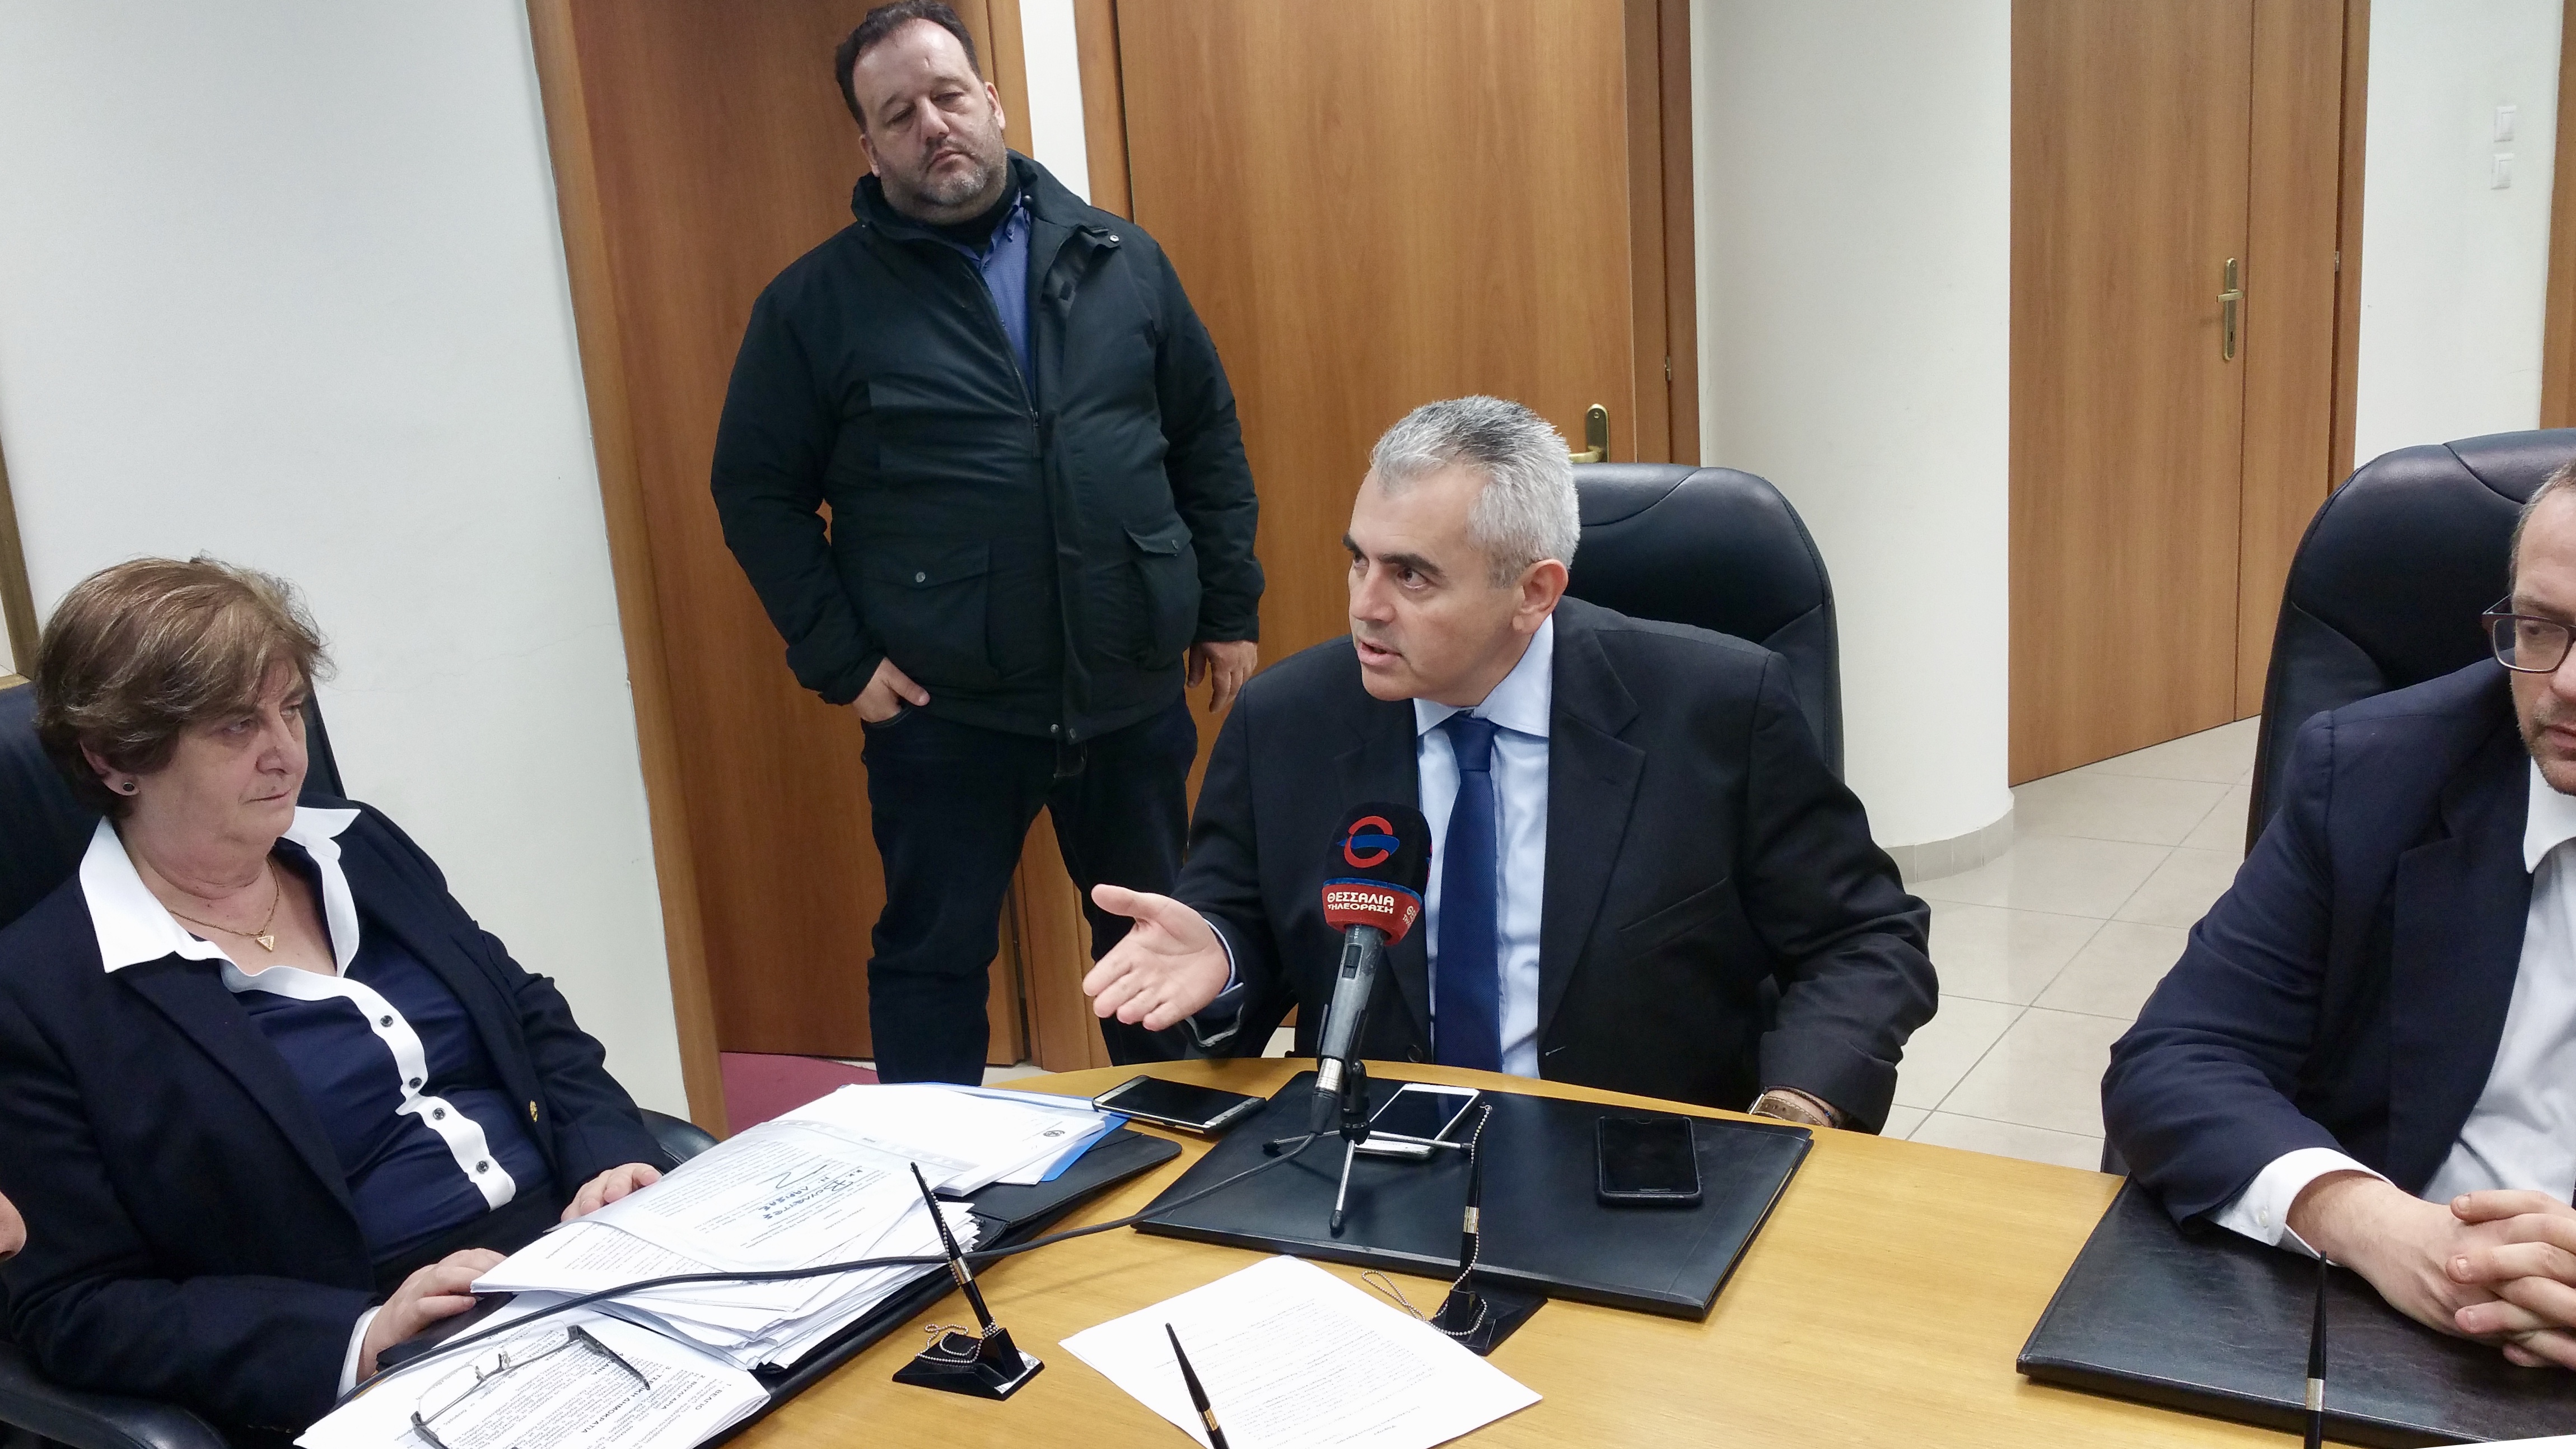 Χαρακόπουλος: "Στρεβλή η εισαγωγή της διαμεσολάβησης"